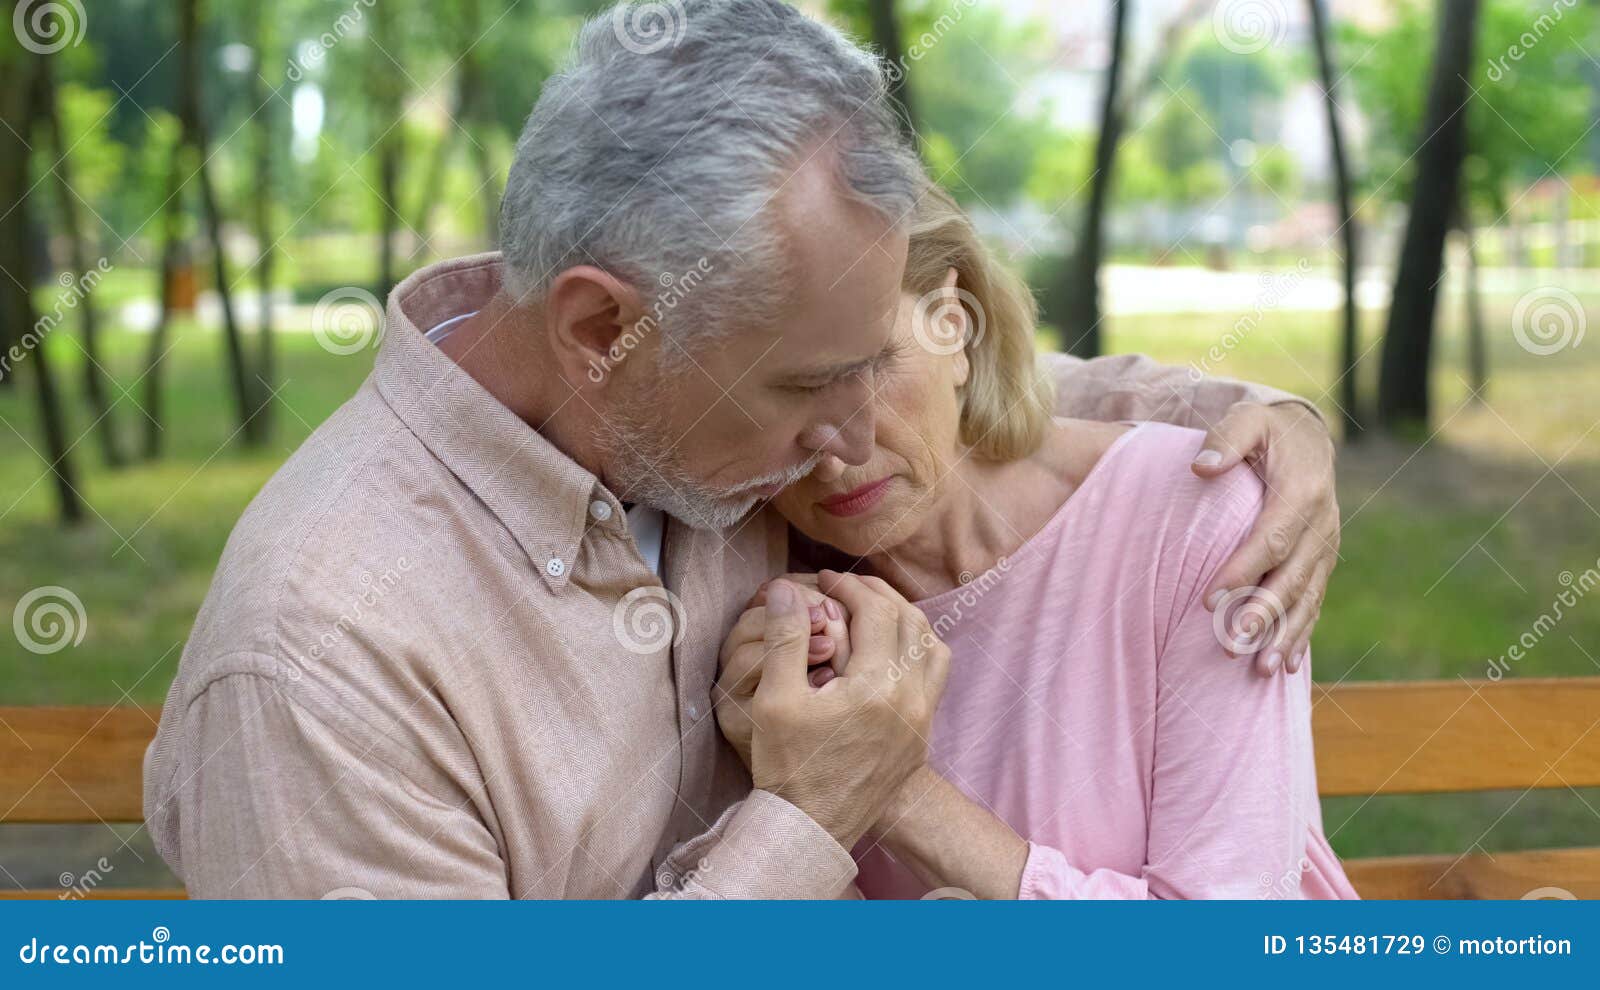 Old wife husband. Пожилые люди обнимаются. Старики обнимаются. Старик обнимает. Объятия пожилых людей.